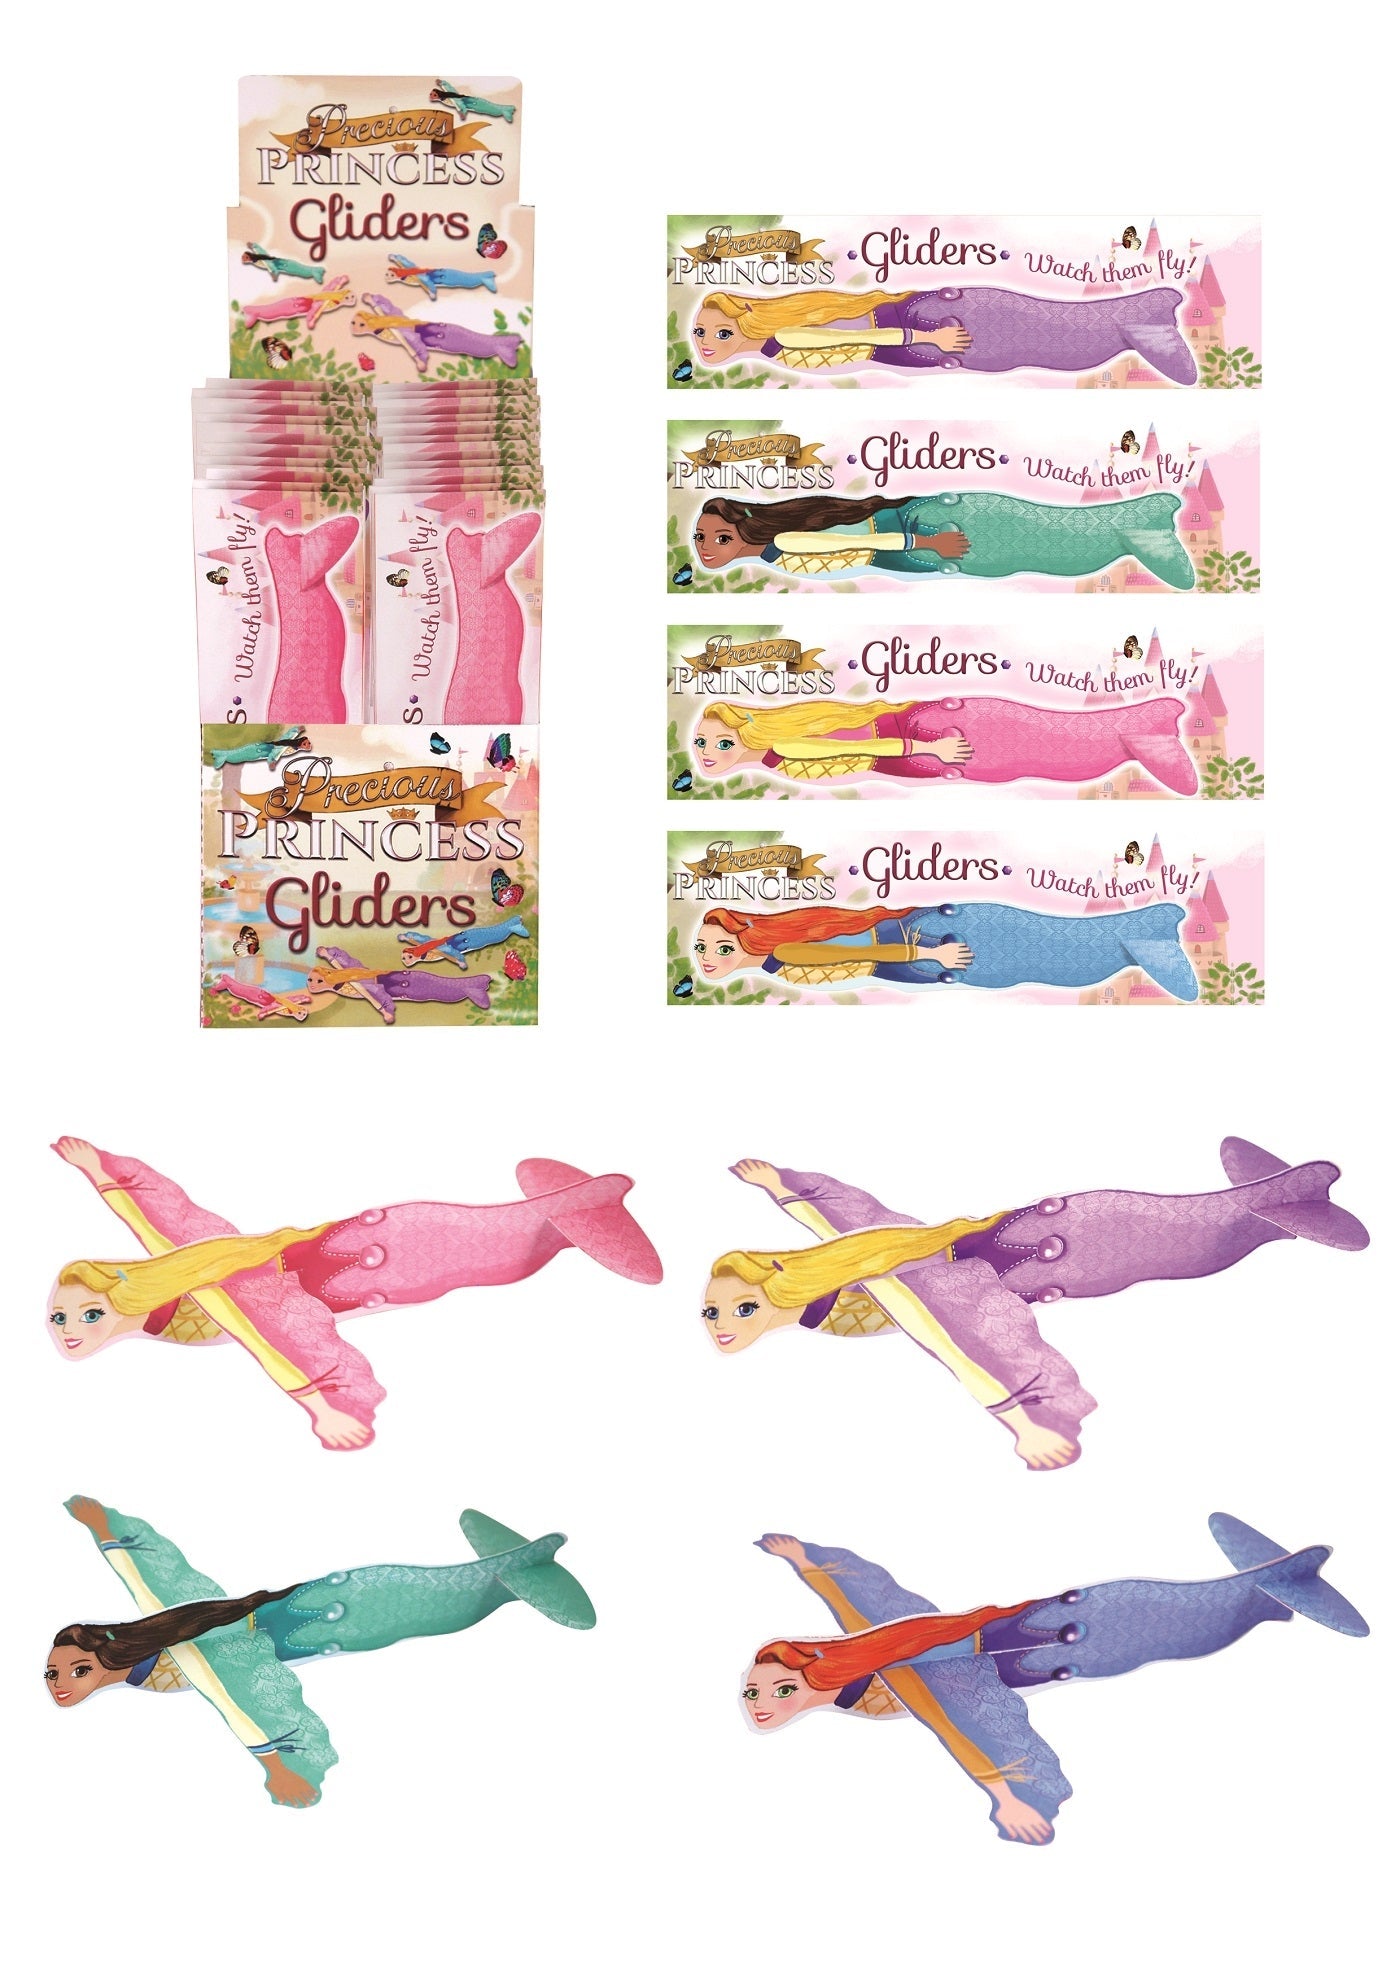 48 Princess Gliders